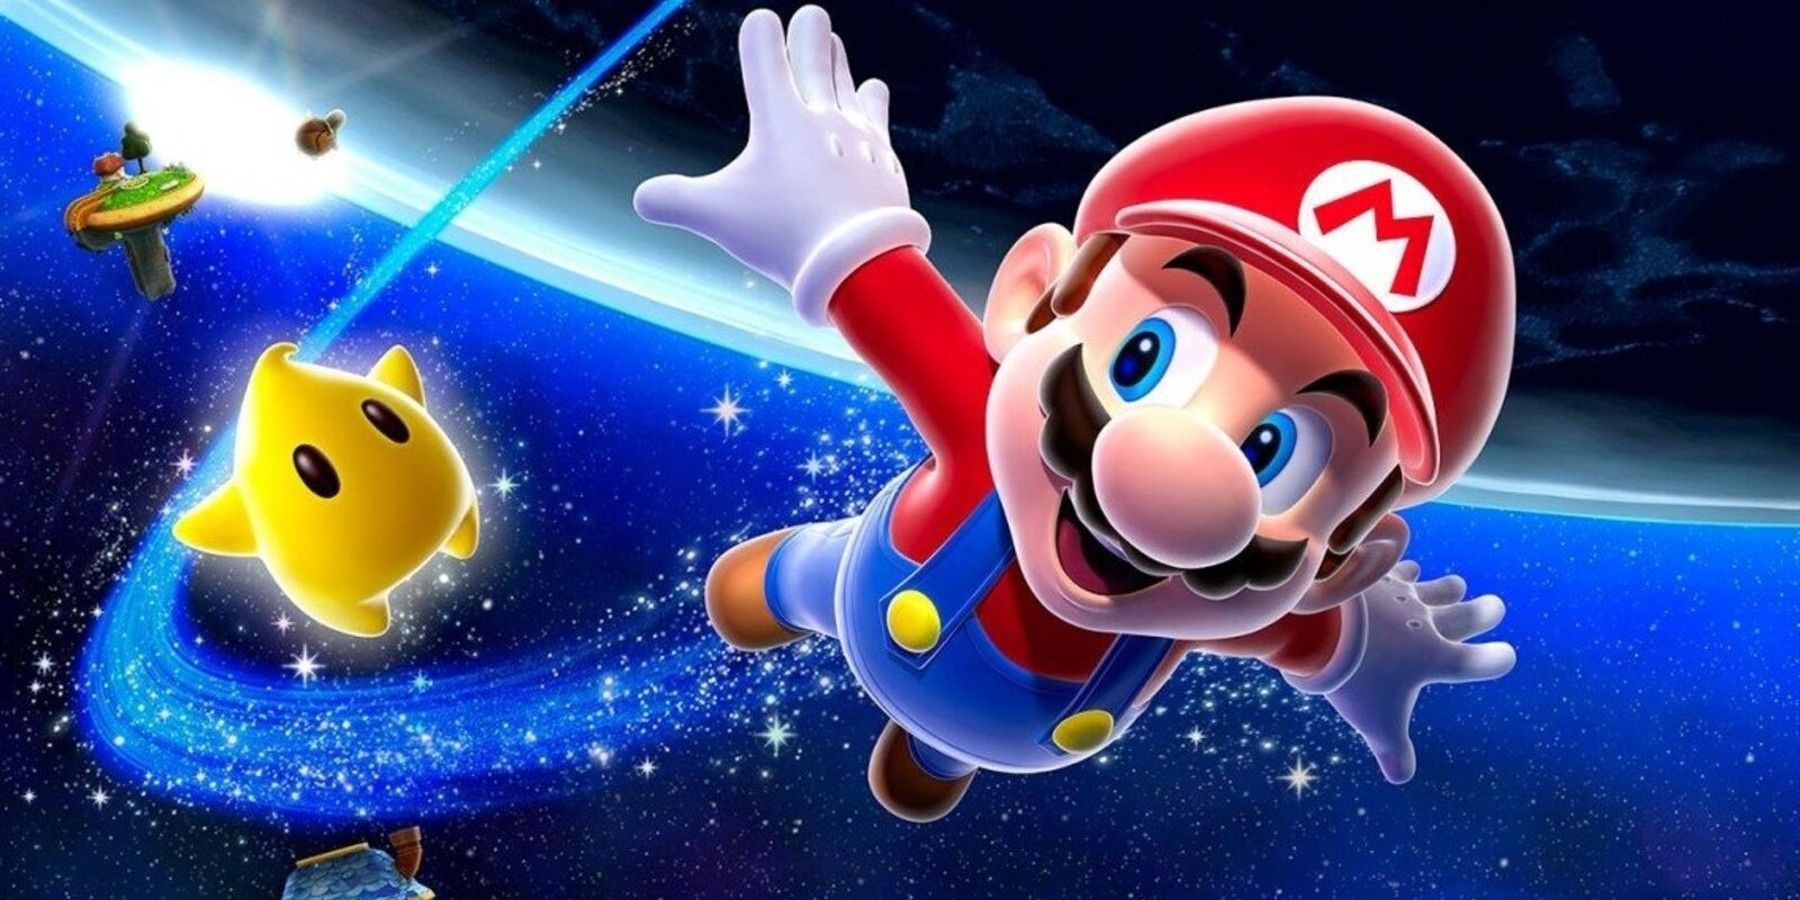 GameStop Store still has a Super Mario Galaxy ad in Windows